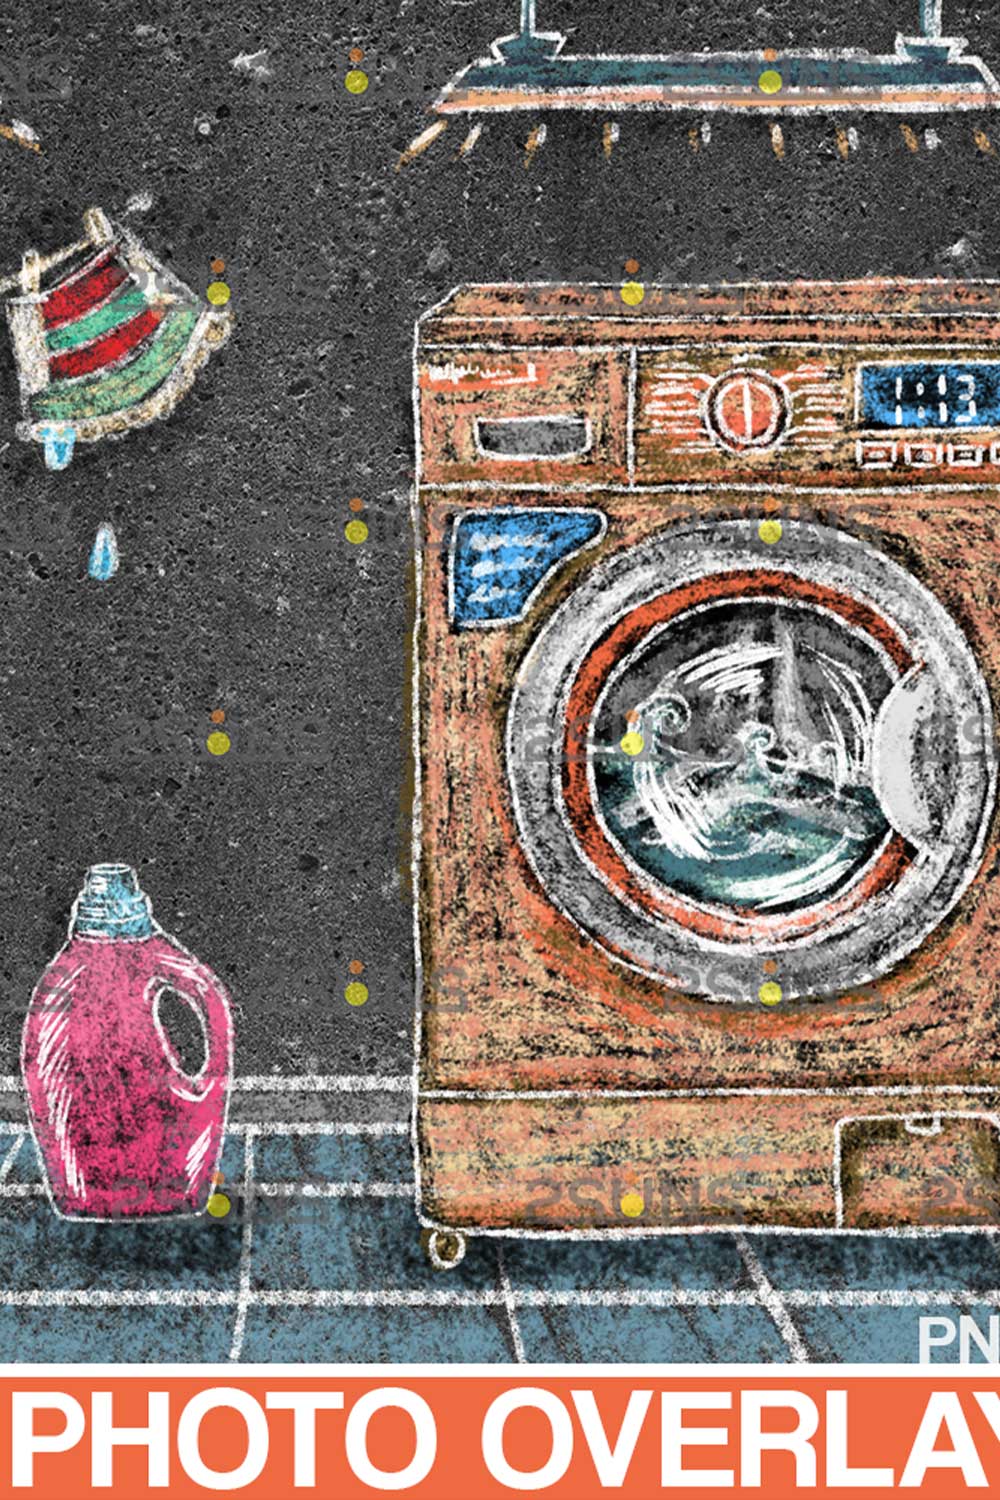 Laundry Backdrop And Washhouse Sidewalk Chalk Art Overlay pinterest image.